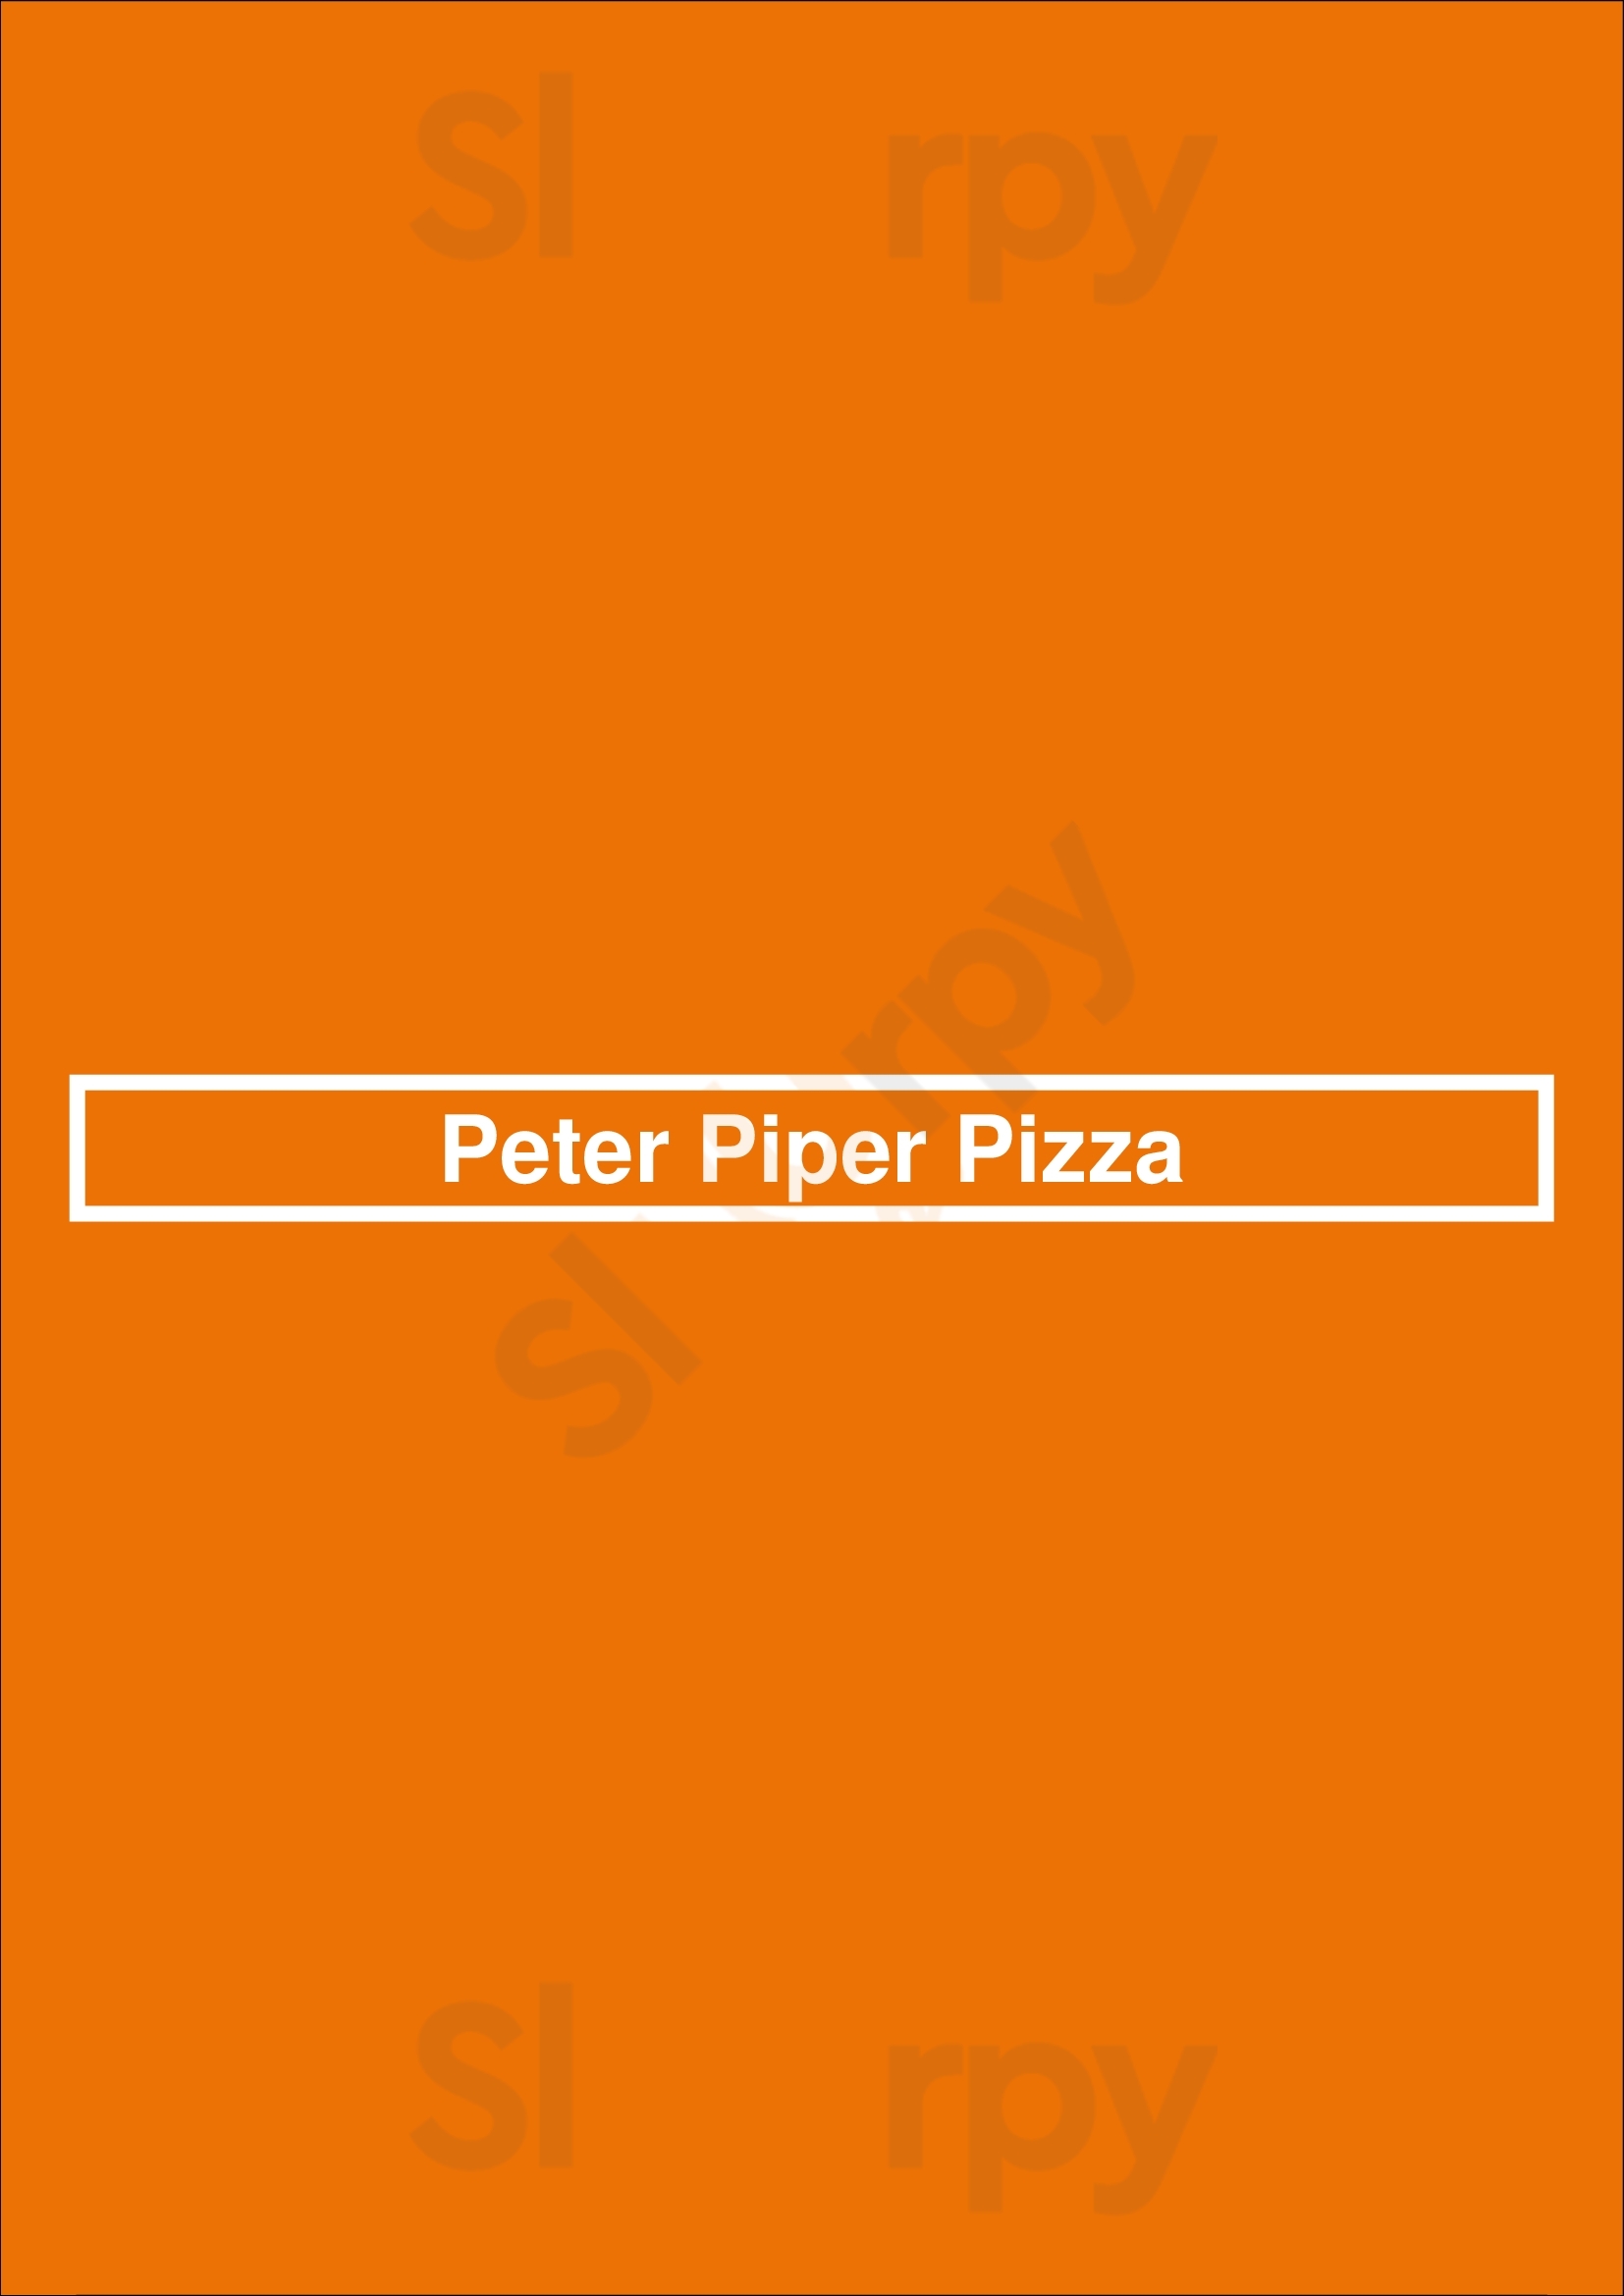 Peter Piper Pizza Phoenix Menu - 1